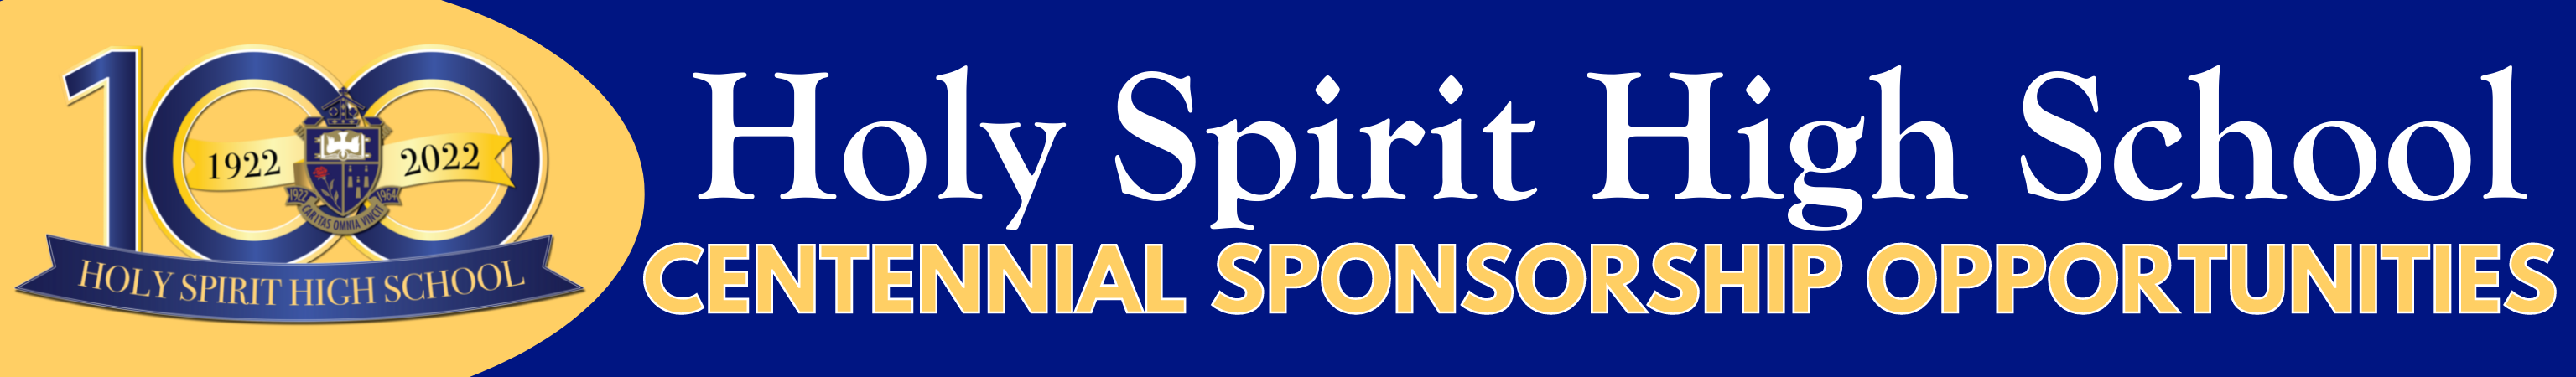 Holy Spirit High School Centennial Sponsorship Opportunities